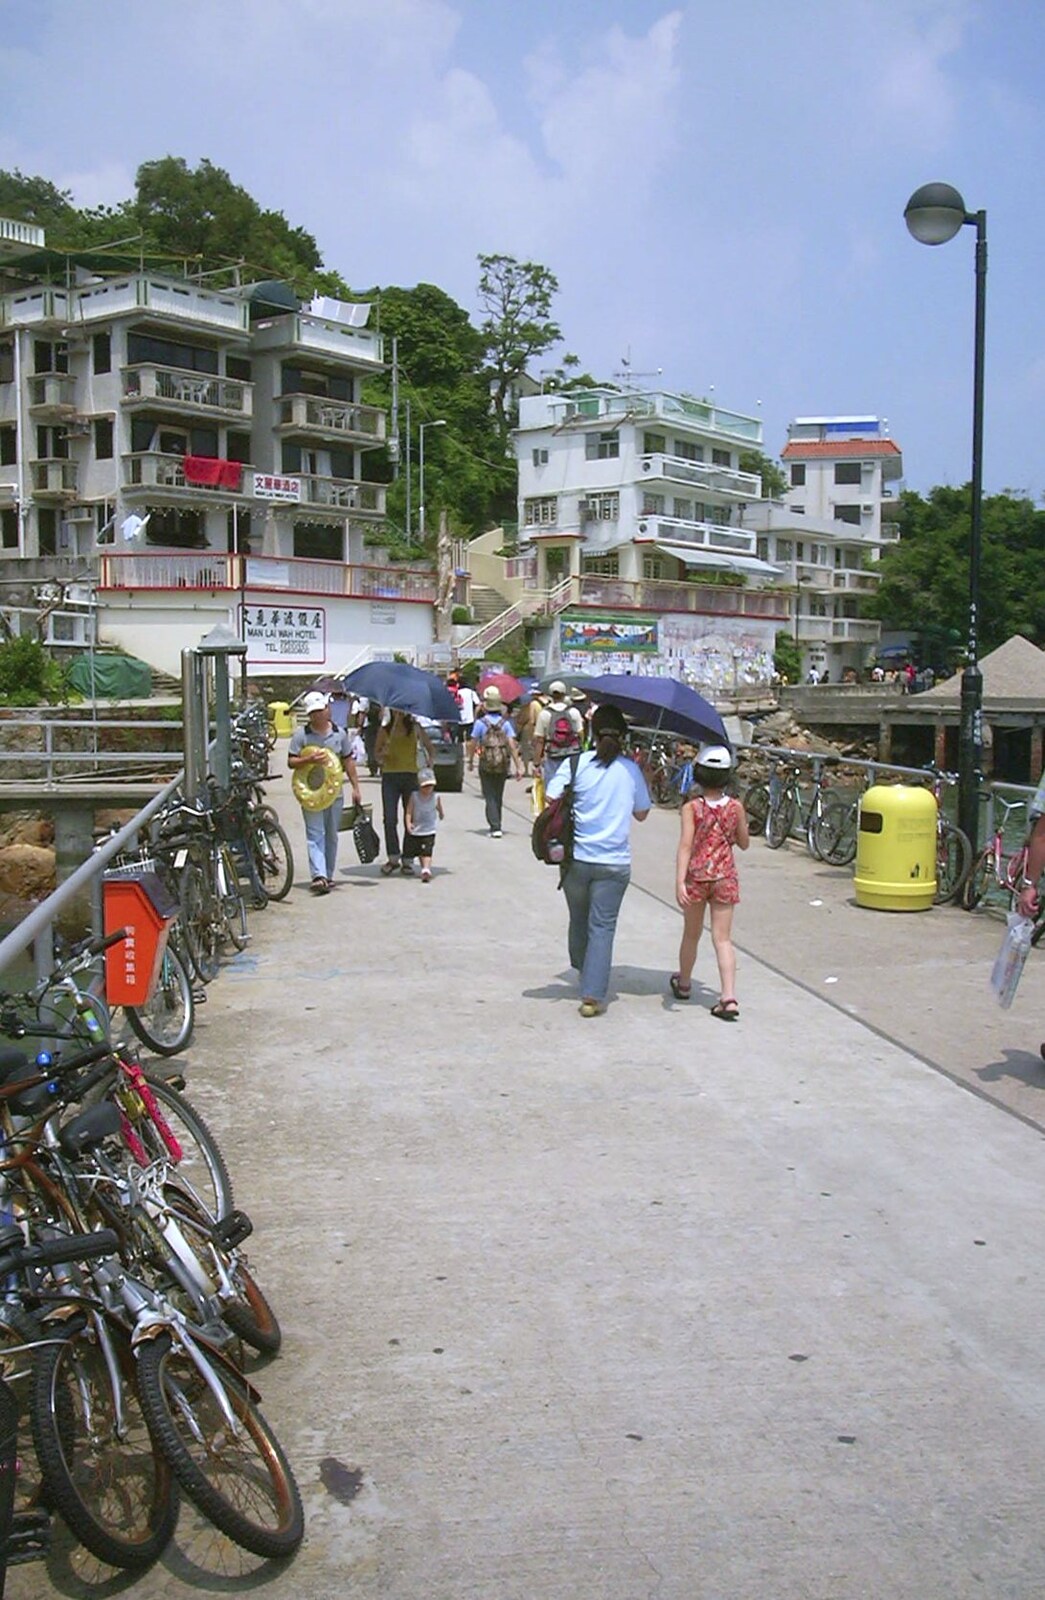 Lamma Island, Hong Kong, China - 20th August 2001: Landfall at the pleasant little village of Yung Shue Wan